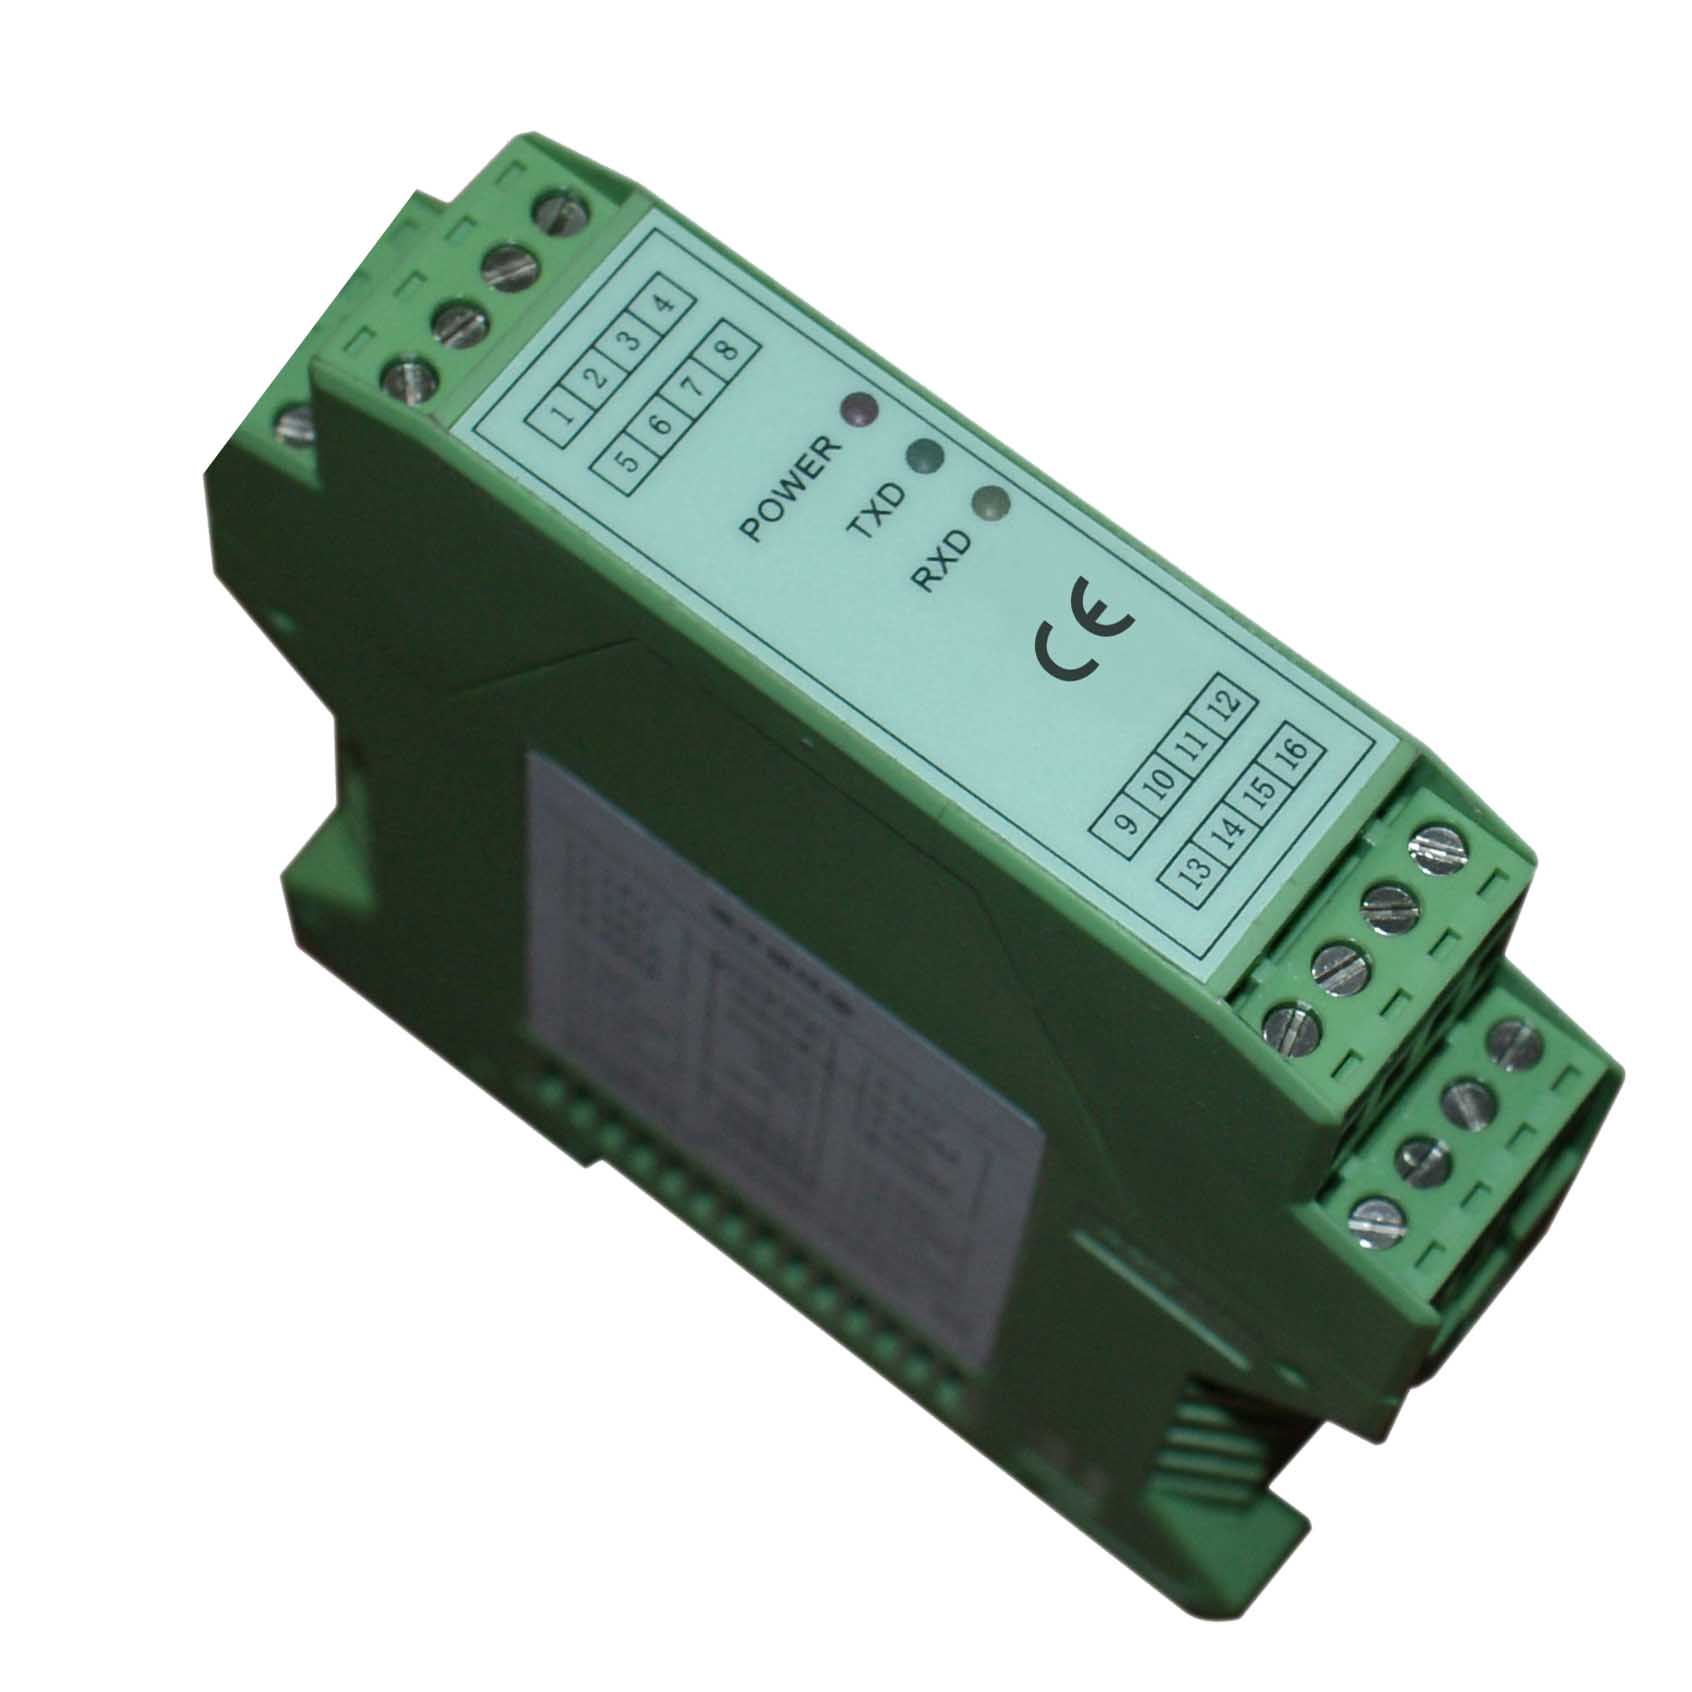 DK1300交流电压/电流 高带宽隔离变送器